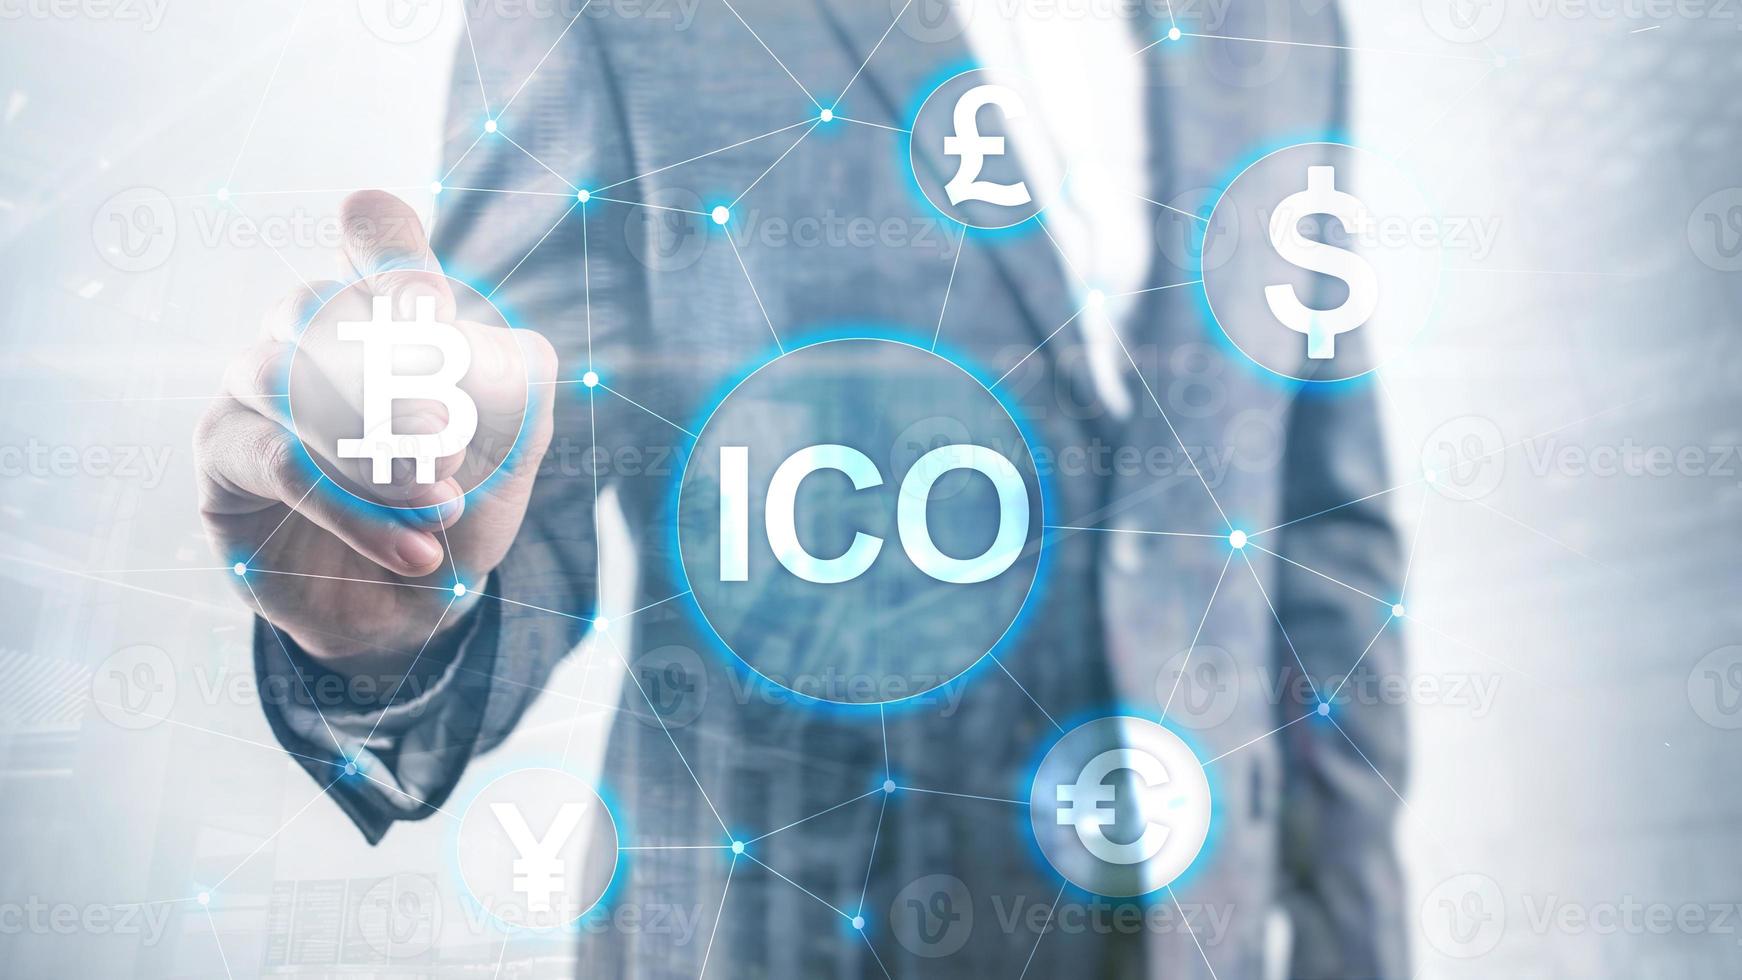 ico: oferta inicial de monedas, blockchain y concepto de criptomoneda en el fondo borroso del edificio empresarial. foto